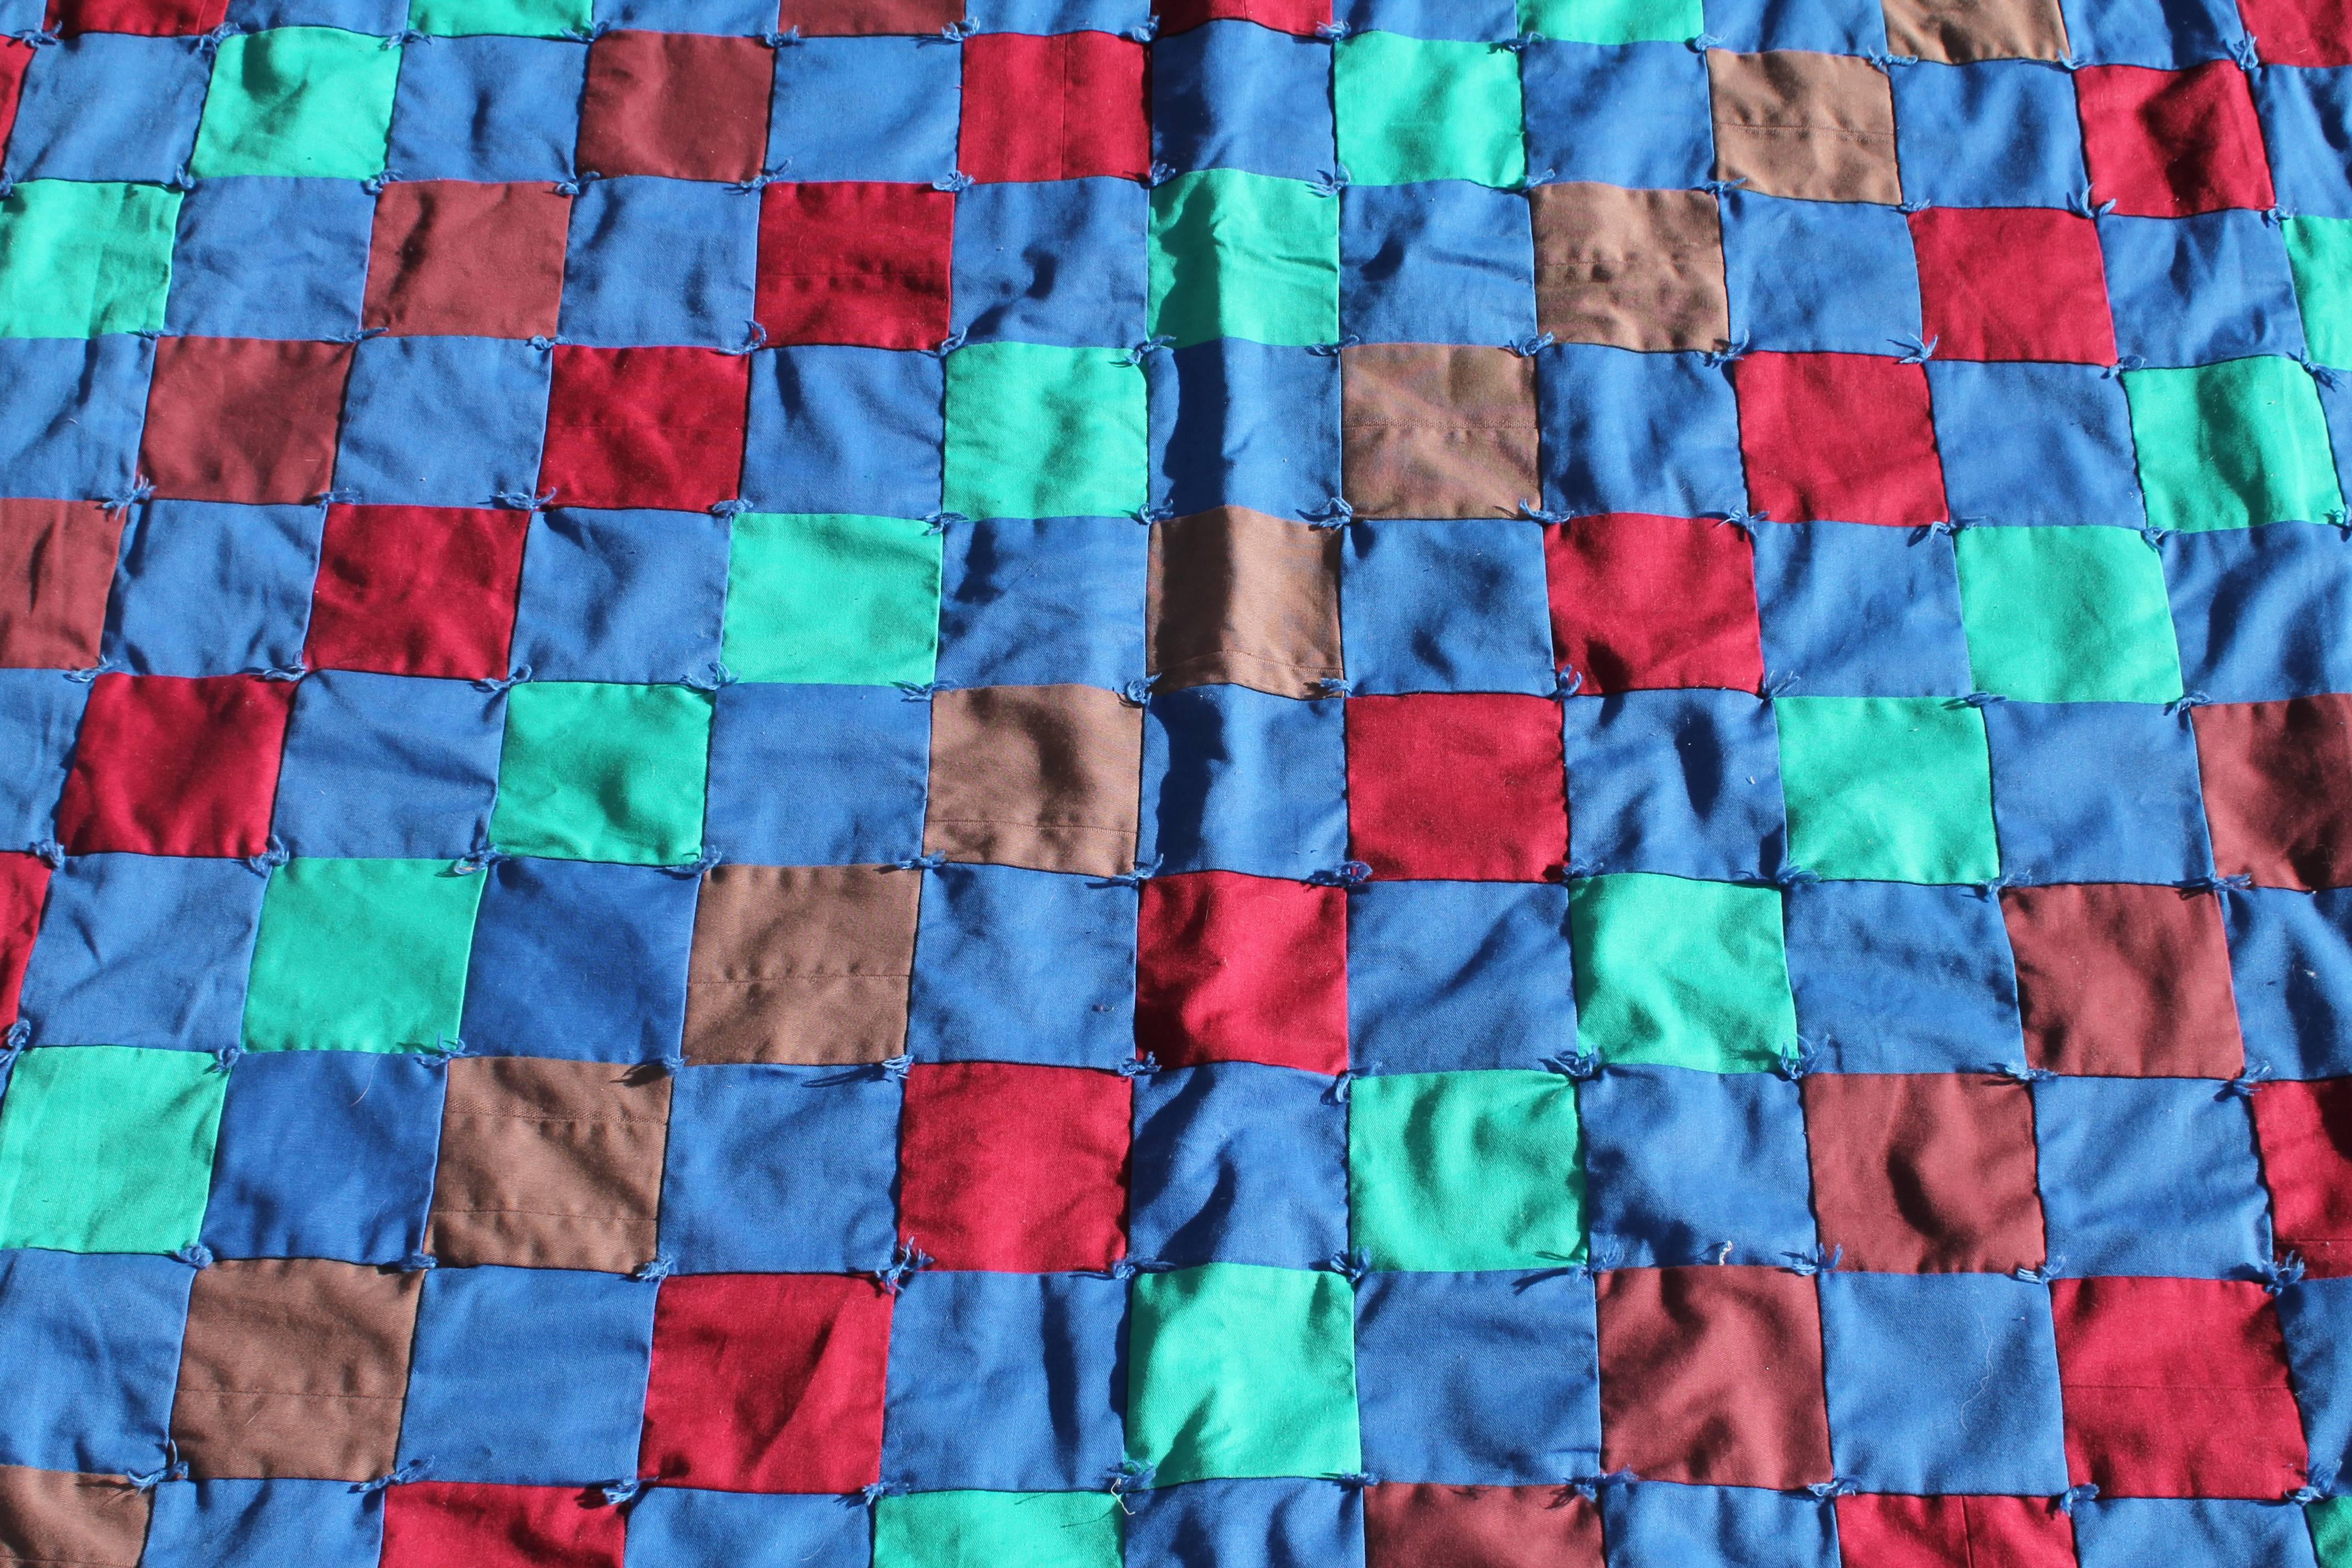 Dieser erstaunliche und farbenfrohe One-Patch-Quilt ist gebunden und in neuwertigem Zustand. Er ist sehr groß und hat die gleiche mintgrüne Rückseite wie die Vorderseite des Quilts.